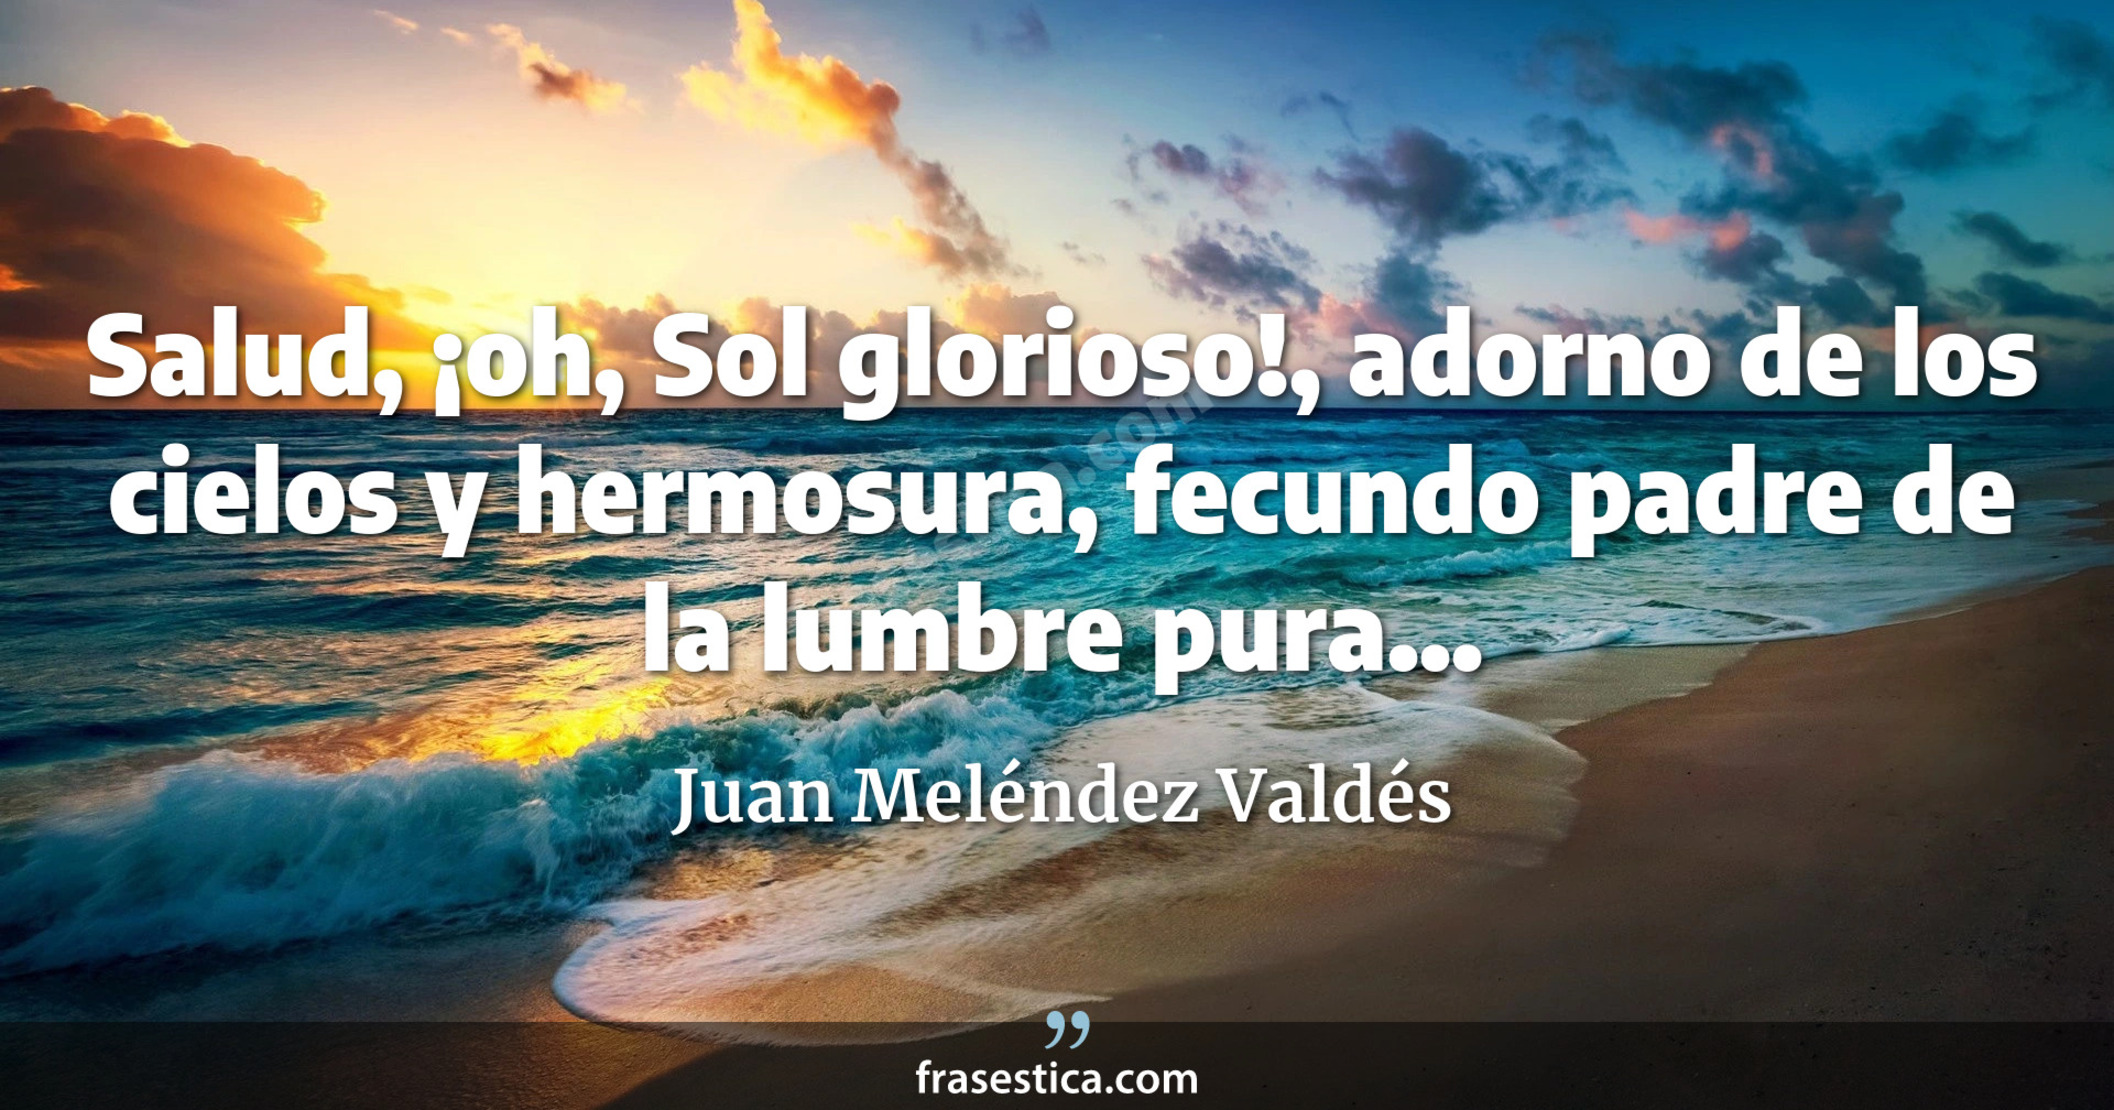 Salud, ¡oh, Sol glorioso!, adorno de los cielos y hermosura, fecundo padre de la lumbre pura... - Juan Meléndez Valdés